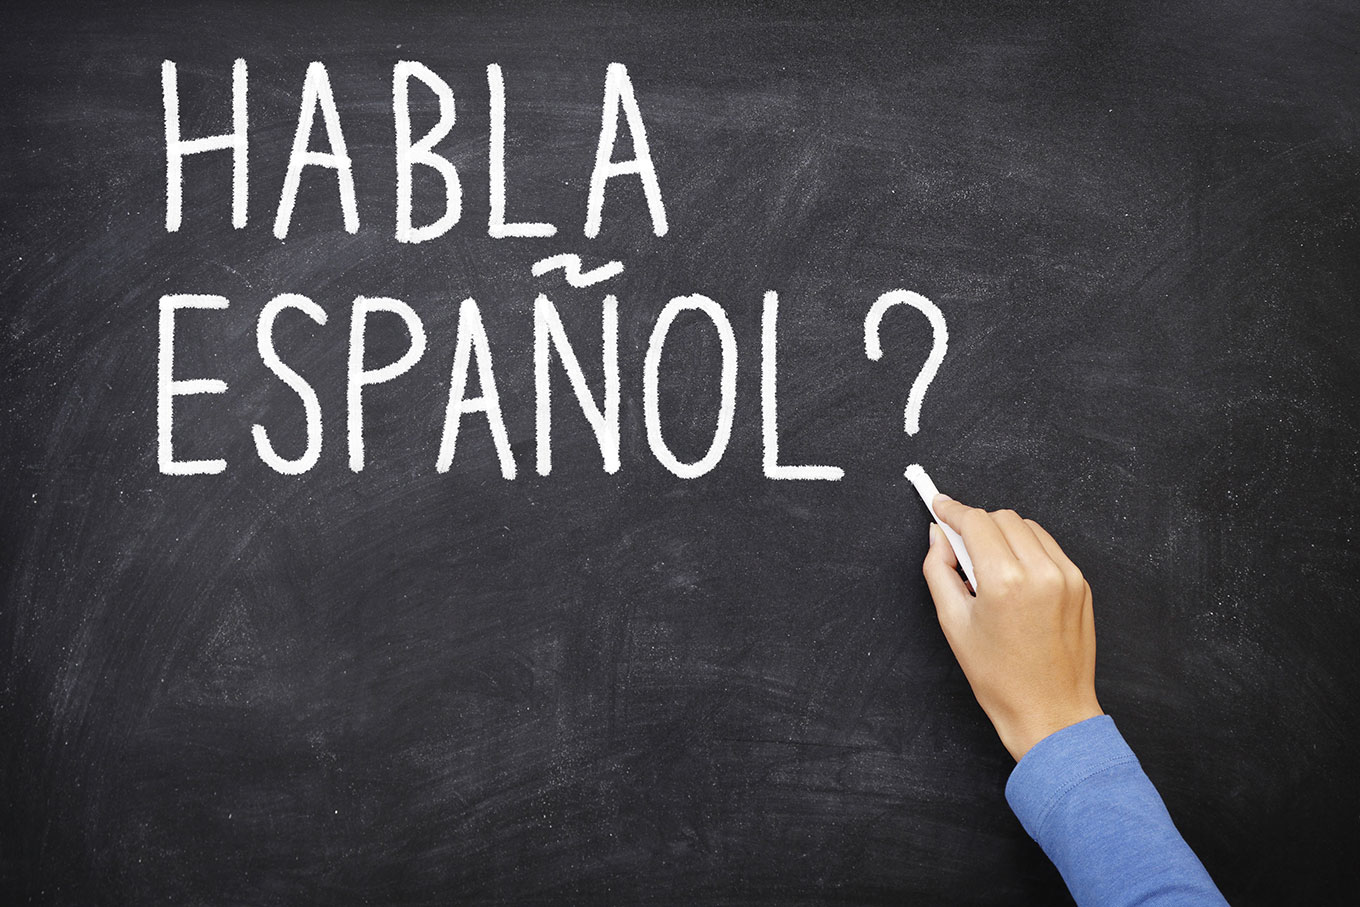 Imagem de um quadro negro com uma mão segurando um giz e escrevendo "Habla español?", em referência ao curso de espanhol